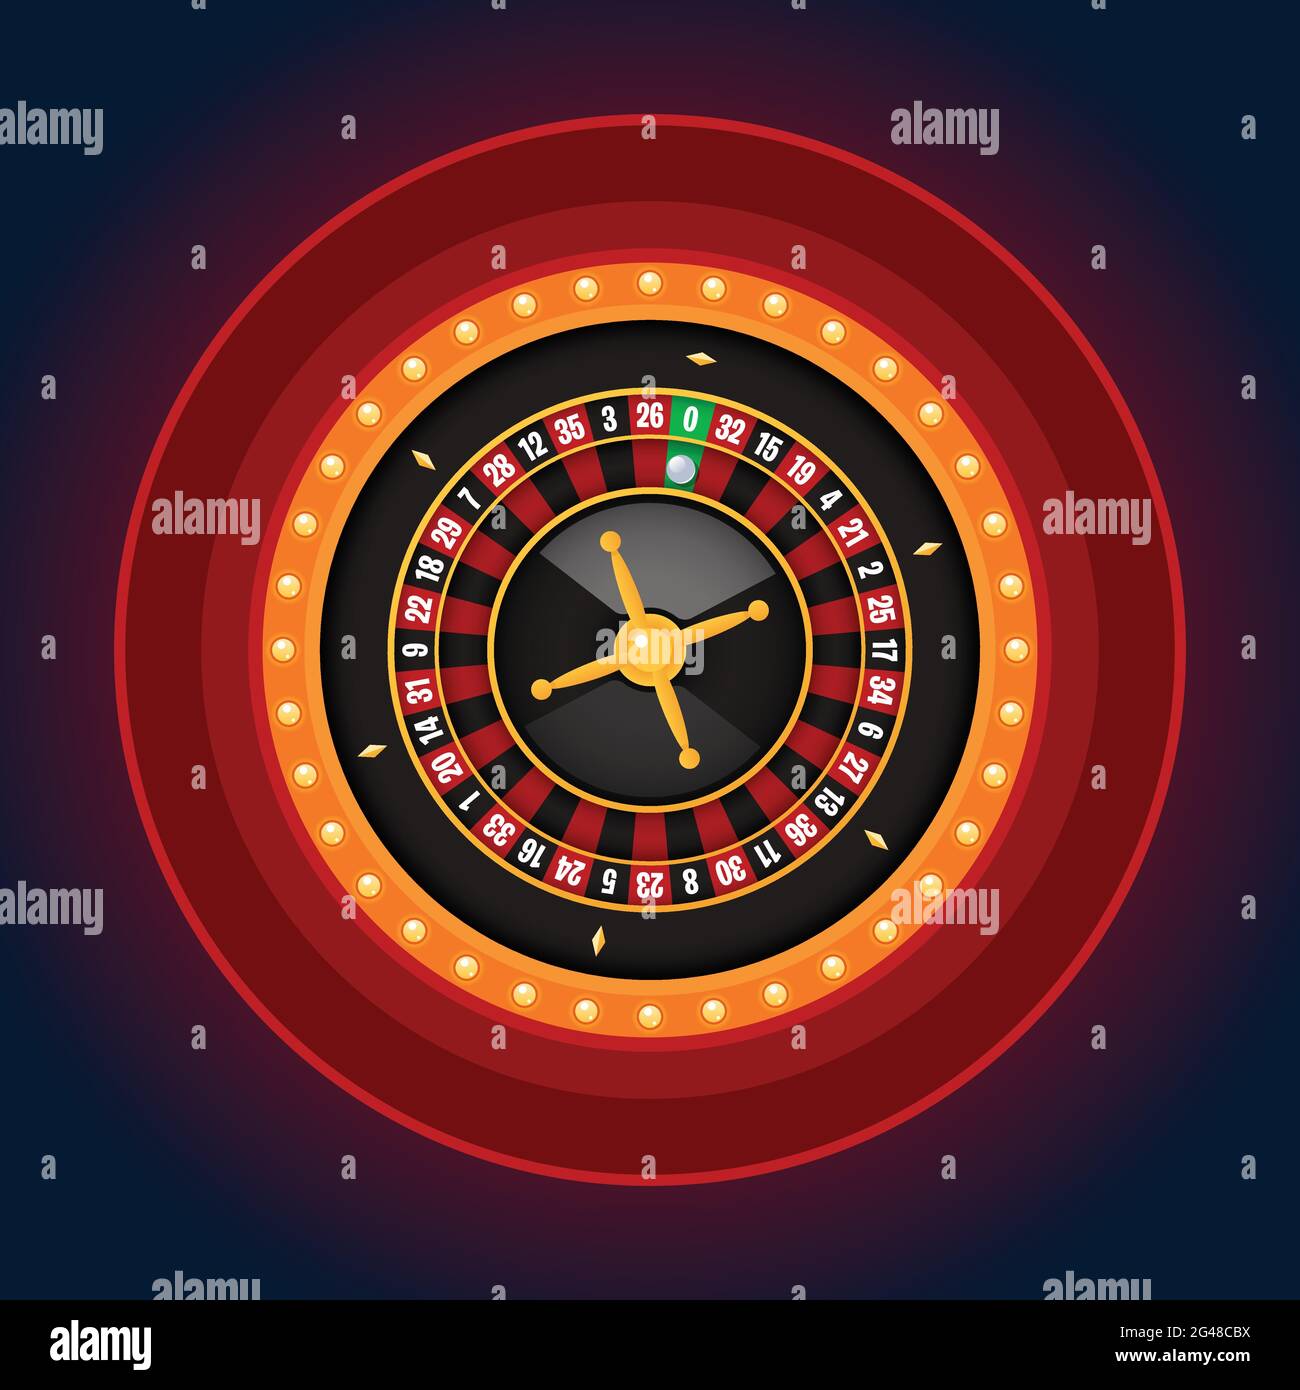 Roulette simple avec cadre de lampe de casino sur fond sombre. Casino concept, jeu, illustration vectorielle Illustration de Vecteur